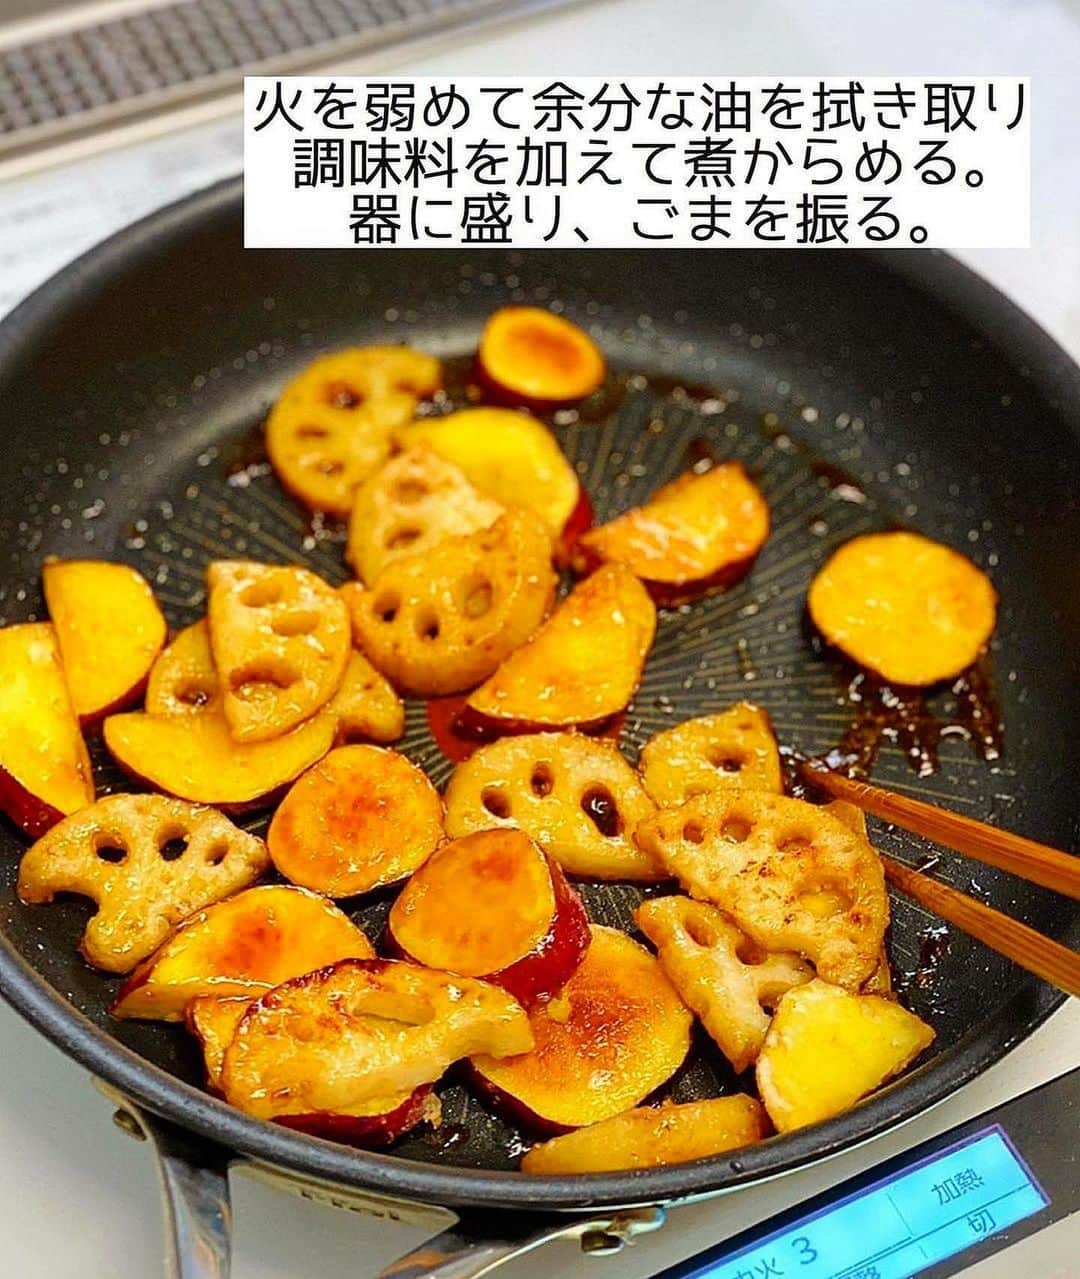 Mizuki【料理ブロガー・簡単レシピ】さんのインスタグラム写真 - (Mizuki【料理ブロガー・簡単レシピ】Instagram)「・秋のごちそう🍠 ⁡ ［#レシピ ］ ーーーーーーーーーーーーーー さつまいもとれんこんの甘辛 ーーーーーーーーーーーーーー ⁡ ⁡ ⁡ おはようございます☺️ ⁡ 今日ご紹介させていただくのは 秋にぴったりのほっこりおかず✨ \ さつまいもとれんこんの甘辛 / (再掲載) ⁡ 野菜だけの副菜でありながら 主役級にごはんがすすむ ちょっと危険なおかずです😂 ホクホク、シャキシャキの食感で 食べ応えも十分ですよ〜💕 ⁡ フライパンひとつでできるので よかったらお試し下さいね🥰 お弁当にもおすすめです♩ ⁡ ⁡ ⁡ ⋱⋰ ⋱⋰ ⋱⋰ ⋱⋰ ⋱⋰ ⋱⋰ ⋱⋰ 📍簡単・時短・節約レシピ更新中  Threadsもこちらから▼ @mizuki_31cafe ⁡ 📍謎の暮らし＆変なライブ垢 @mizuki_kurashi ⋱⋰ ⋱⋰ ⋱⋰ ⋱⋰ ⋱⋰ ⋱⋰ ⋱⋰ ⁡ ⁡ ⁡ ＿＿＿＿＿＿＿＿＿＿＿＿＿＿＿＿＿＿＿ 【2〜3人分】 さつまいも...小1本(150g) れんこん...1節(150g) 片栗粉...大1.5 サラダ油...大3 ●砂糖・醤油・みりん...各大1 ●酢...小1 (あれば)黒ごま...適量 ⁡ 1.さつまいもは皮ごと、れんこんは皮を剥き、それぞれ8mm厚さの半月切りにし、水に5分晒して水気を拭く。ポリ袋に入れ、片栗粉をまぶす。●は合わせておく。 2.フライパンにサラダ油を中火で熱し、さつまいもとれんこんを返しながら7〜8分焼いて火を通す。 3.火を弱めて余分な油を拭き取り、●を加えて煮からめる。器に盛り、ごまを振る。 ￣￣￣￣￣￣￣￣￣￣￣￣￣￣￣￣￣￣￣ ⁡ ⁡ 《ポイント》 ♦︎さつまいもとれんこんの''水気を拭き、薄く片栗粉をまぶす''のが美味しく作るコツです♩ ♦︎火が通る前に焦がさないように火加減を調節して下さい☆ ♦︎直径26cmのフライパンを使用しています♩ ♦︎さつまいもとれんこん、どちらかだけで作っても美味しいです♩ ⁡ ⁡ ⁡ ⁡ ⁡ ⁡ ⋱⋰ ⋱⋰ ⋱⋰ ⋱⋰ ⋱⋰ ⋱⋰ ⋱⋰  愛用している調理器具・器など   #楽天ROOMに載せてます ‎𐩢𐩺  (ハイライトから飛べます🕊️) ⋱⋰ ⋱⋰ ⋱⋰ ⋱⋰ ⋱⋰ ⋱⋰ ⋱⋰ ⁡ ⁡ ⁡ ⁡ ⁡ ⁡ ✼••┈┈┈┈┈••✼••┈┈┈┈┈••✼ 今日のごはんこれに決まり！ ‎𓊆#Mizukiのレシピノート 500品𓊇 ✼••┈┈┈┈┈••✼••┈┈┈┈┈••✼ ⁡ ˗ˏˋ おかげさまで25万部突破 ˎˊ˗ 料理レシピ本大賞準大賞を受賞しました✨ ⁡ 6000点の中からレシピを厳選し まさかの【500レシピ掲載】 肉や魚のメインおかずはもちろん 副菜、丼、麺、スープ、お菓子 ハレの日のレシピ、鍋のレシピまで 全てこの一冊で完結 𓌉◯𓇋 (全国の書店・ネット書店で発売中) ⁡ ⁡ ⁡ ⁡ ⁡ ⁡ #さつまいもレシピ #れんこんレシピ #さつまいも #れんこん #副菜レシピ #お弁当 #節約料理  #簡単料理  #時短料理 #mizukiレシピ  #時短レシピ #節約レシピ #簡単レシピ」9月13日 6時44分 - mizuki_31cafe